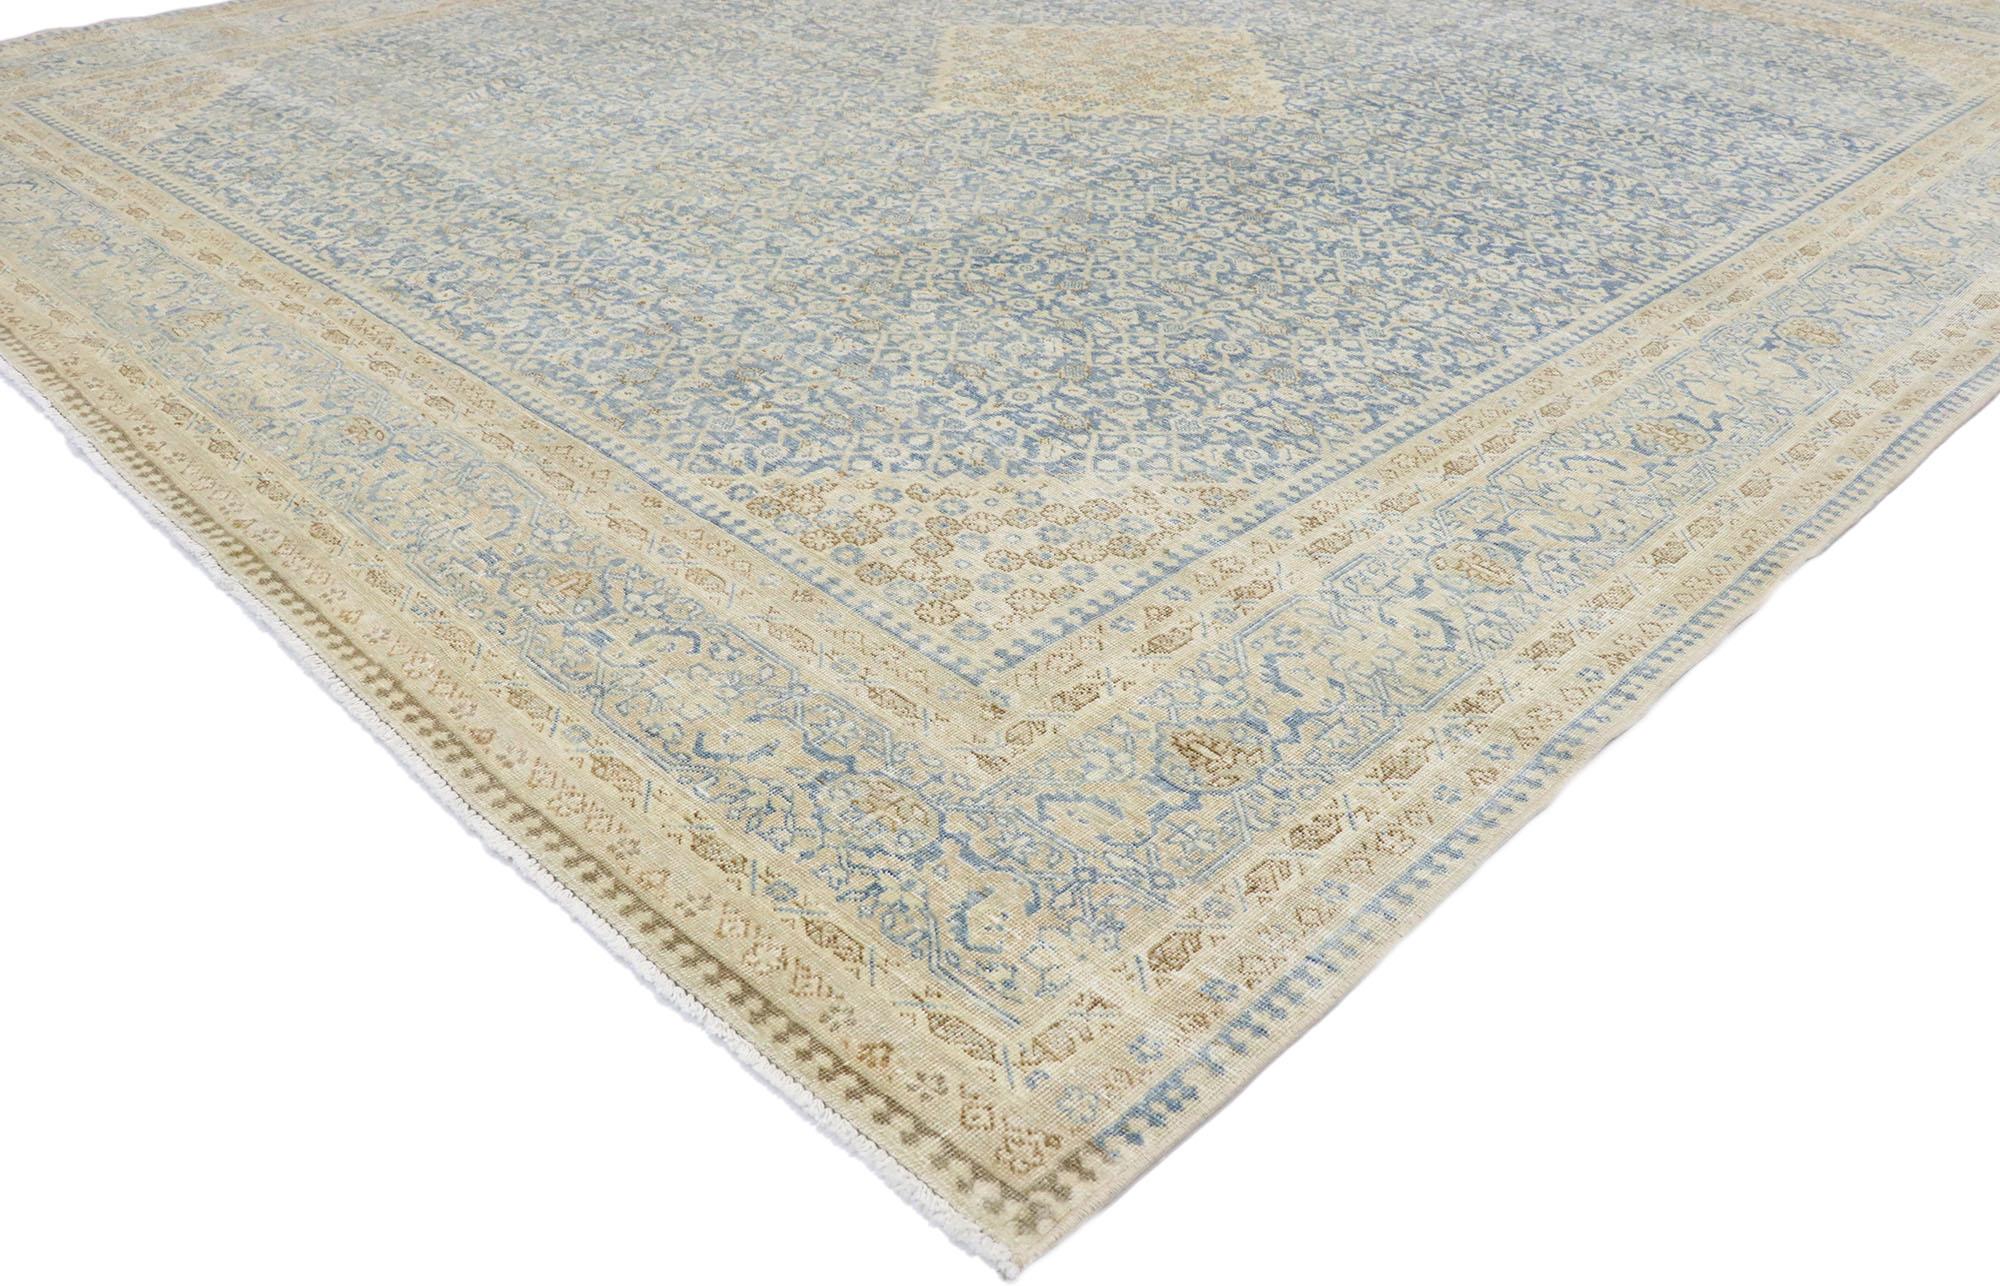 53477, tapis Persan Tabriz ancien et usé, de style Transitionnel Côtier. Dégageant des vibrations côtières avec des couleurs légères et aérées, ce tapis Tabriz persan ancien en laine nouée à la main est une vision captivante de la beauté tissée. Le